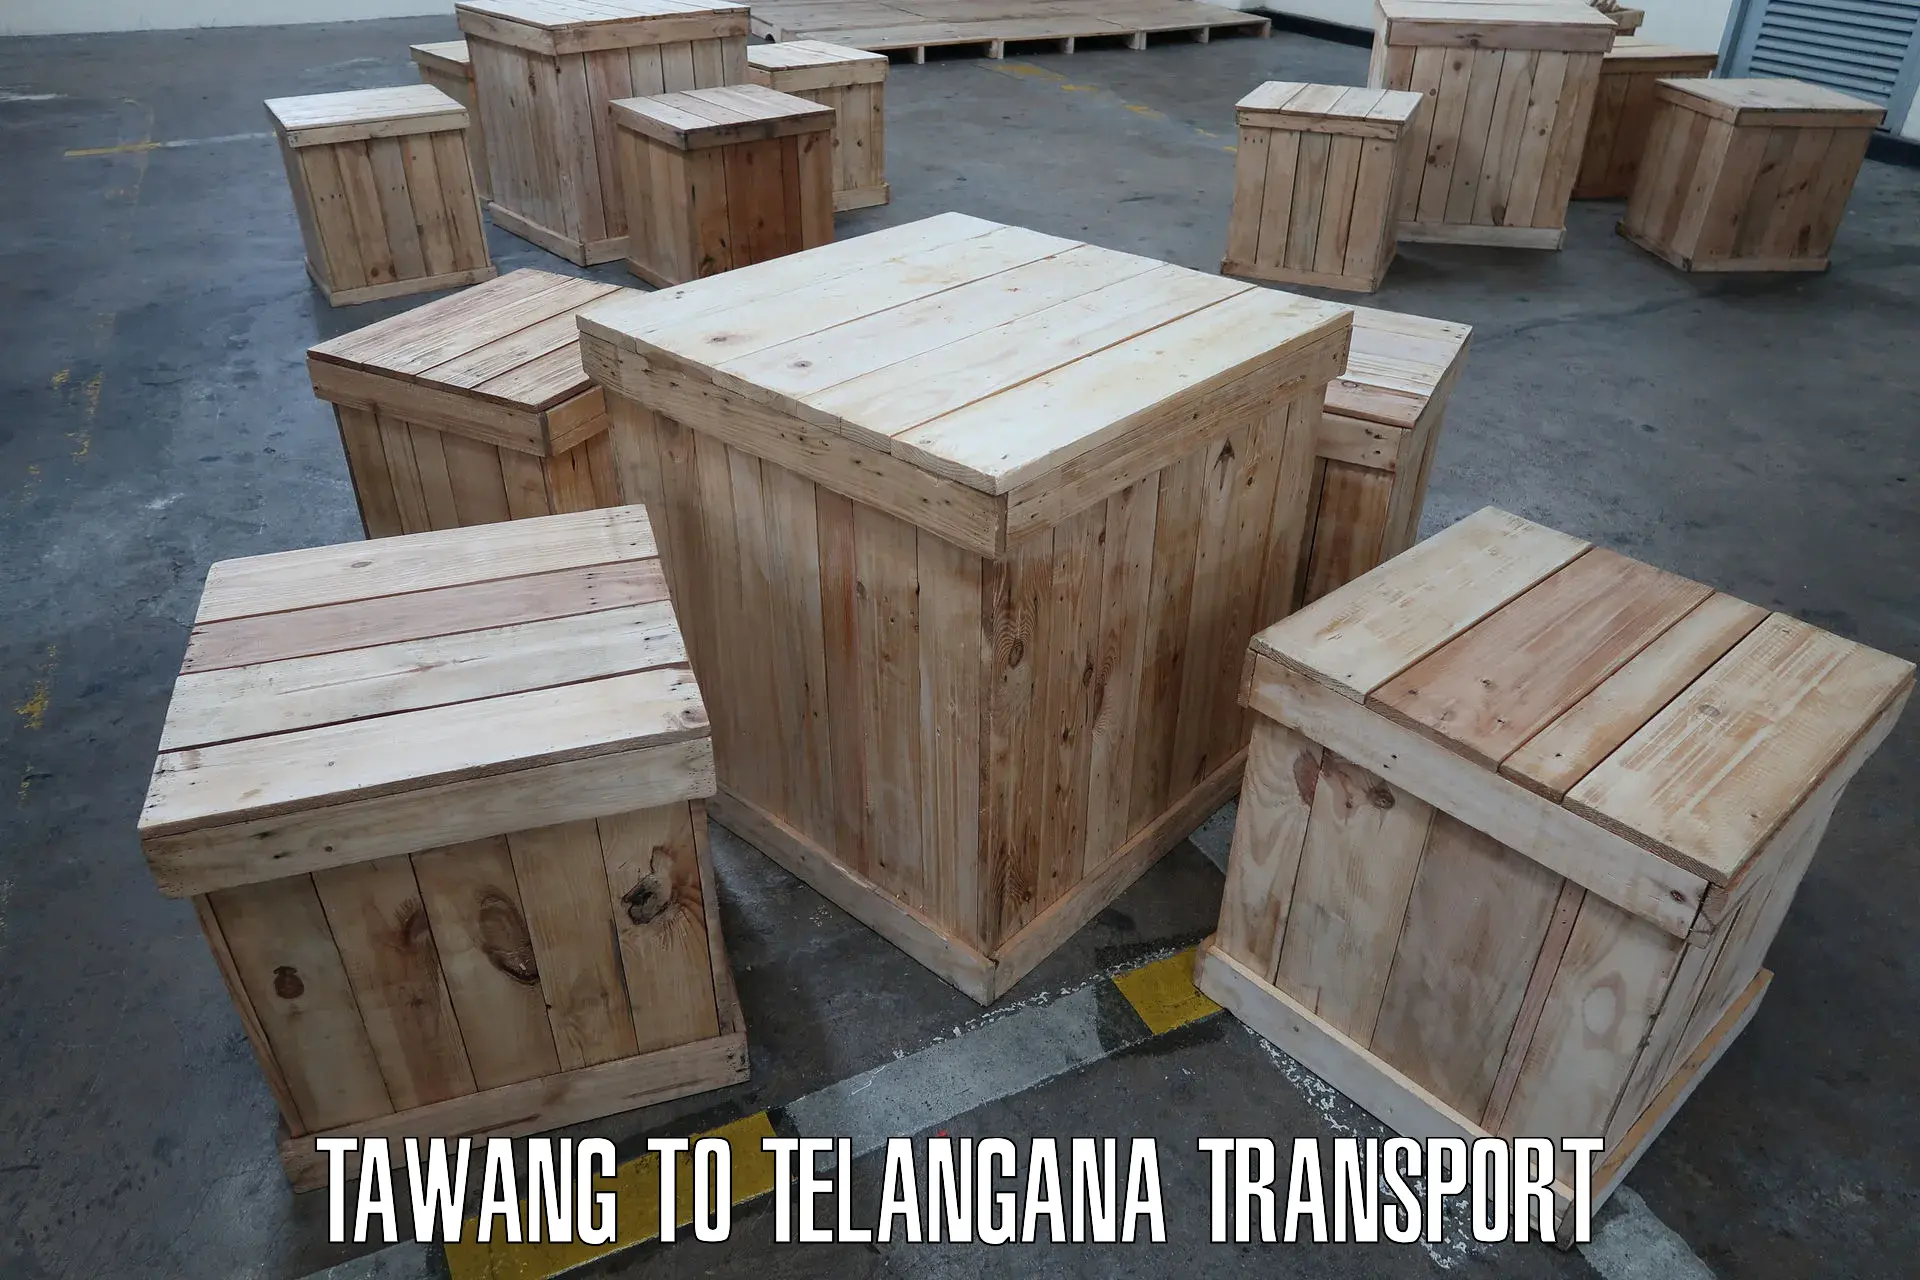 Road transport services in Tawang to Balanagar